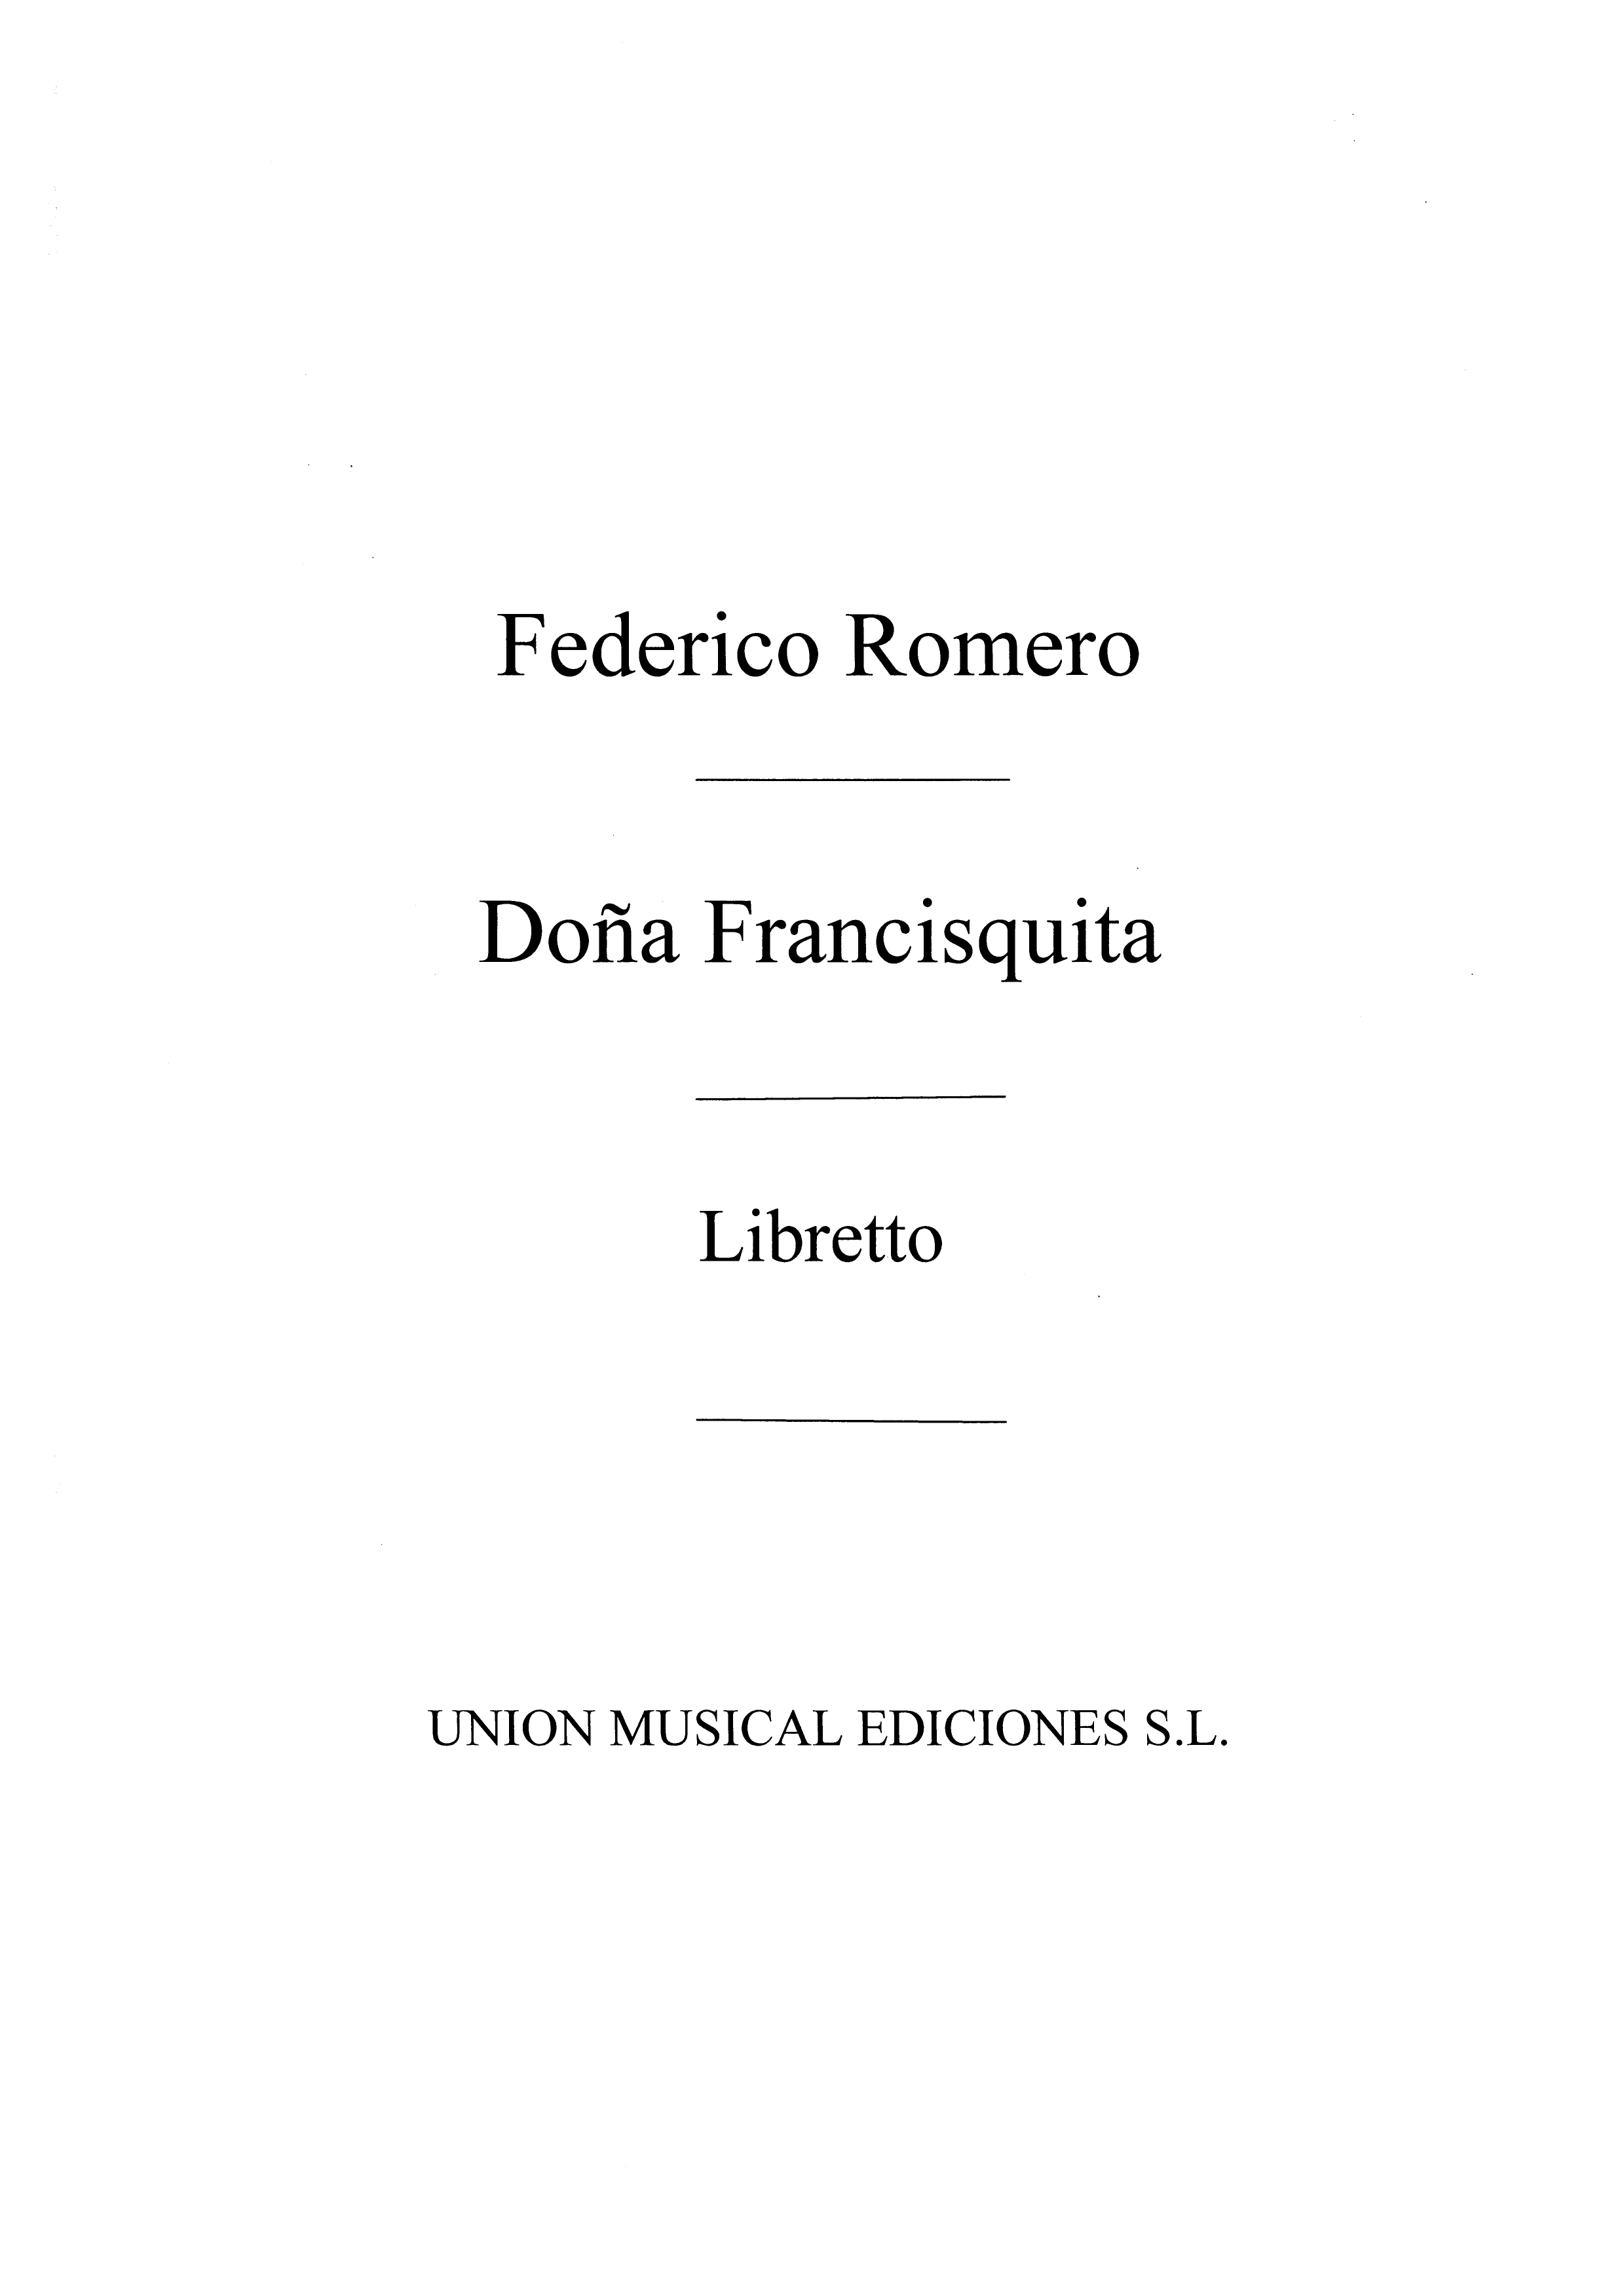 Vives: Dona Francisquita (Libretto)